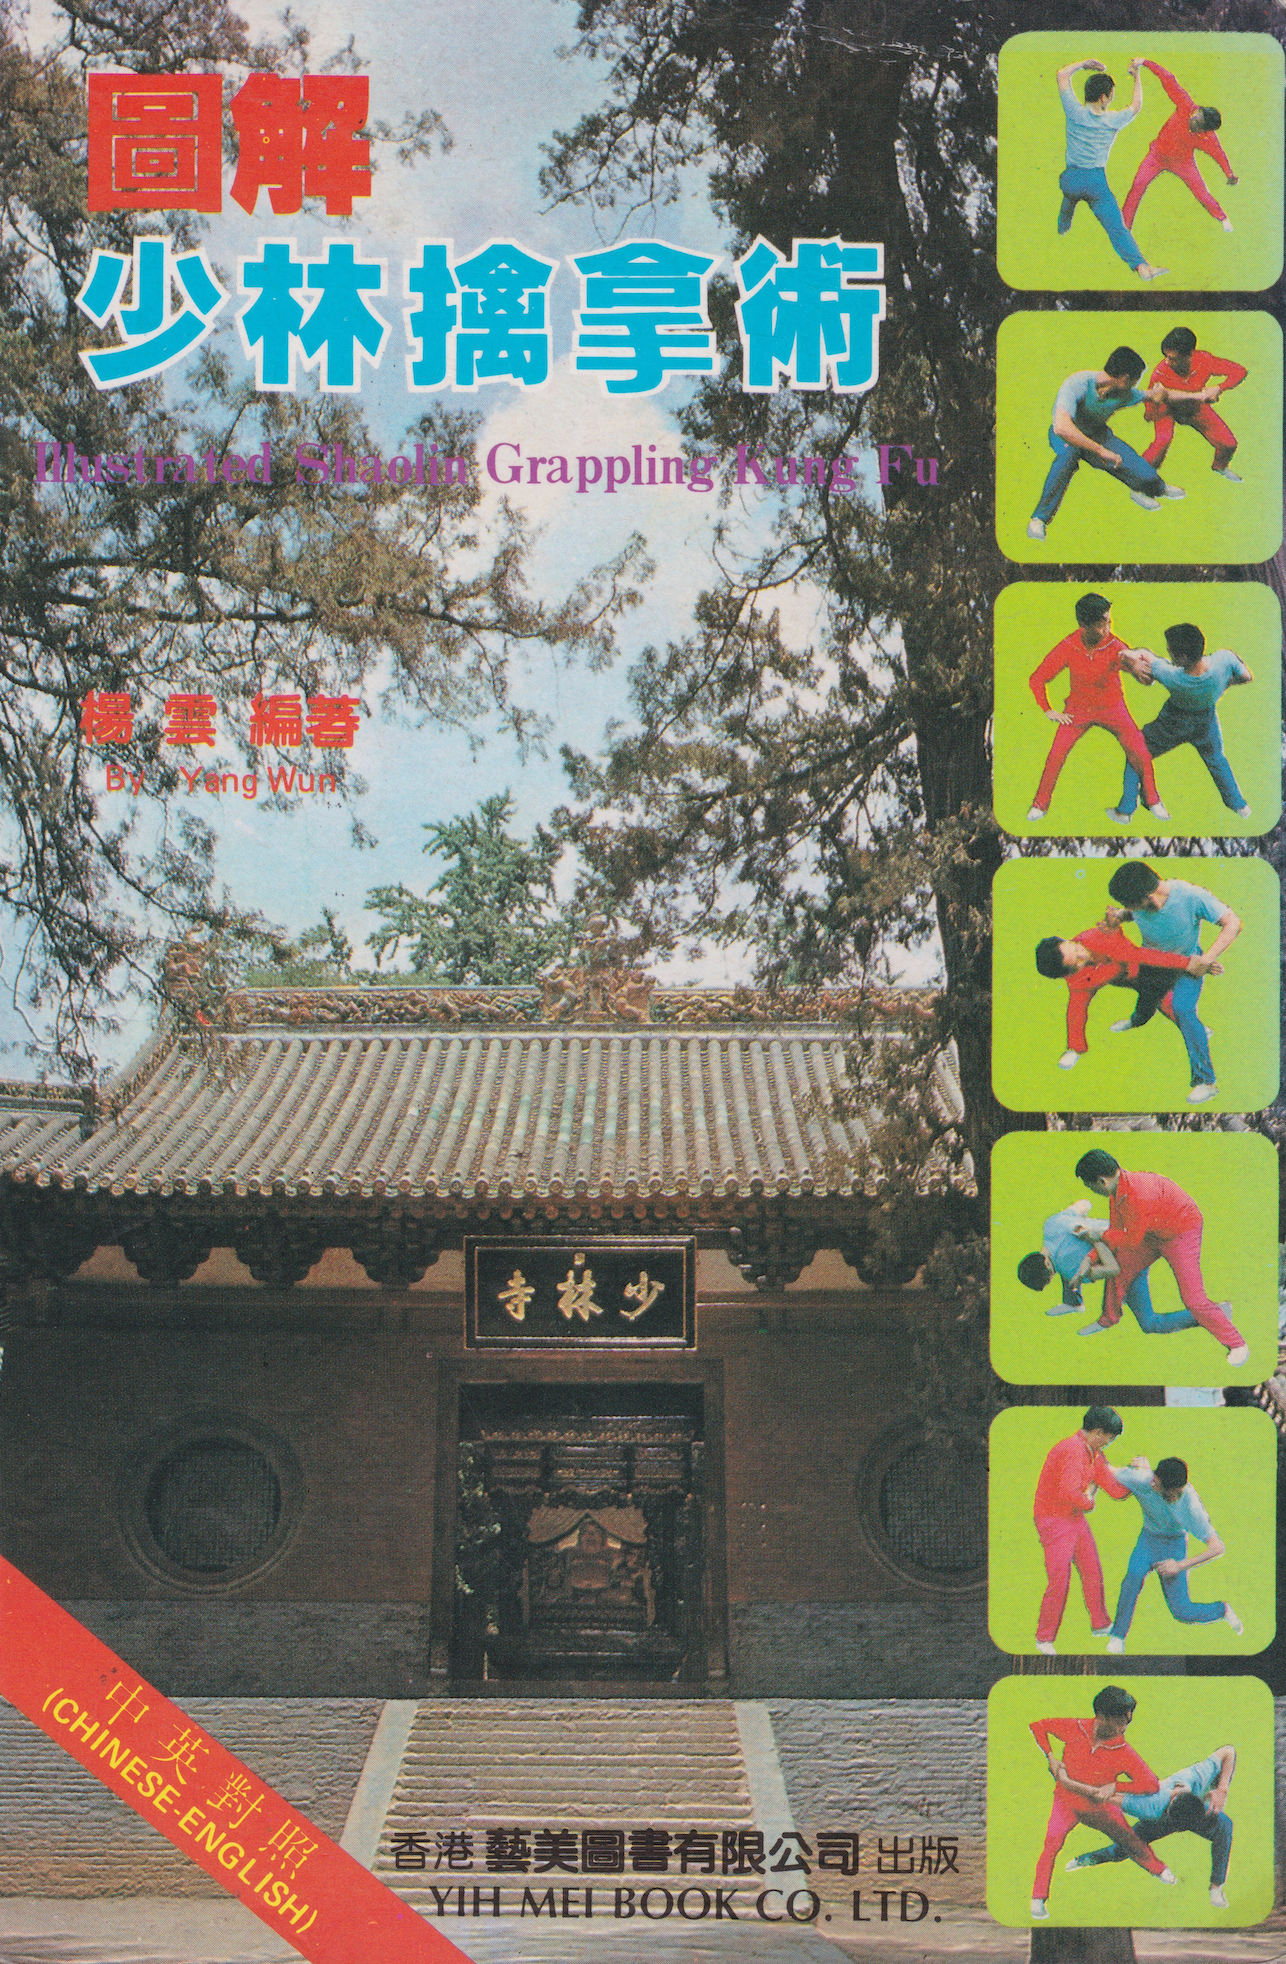 Illustrated Shaolin Grappling Kung Fu Book by Yang Wun